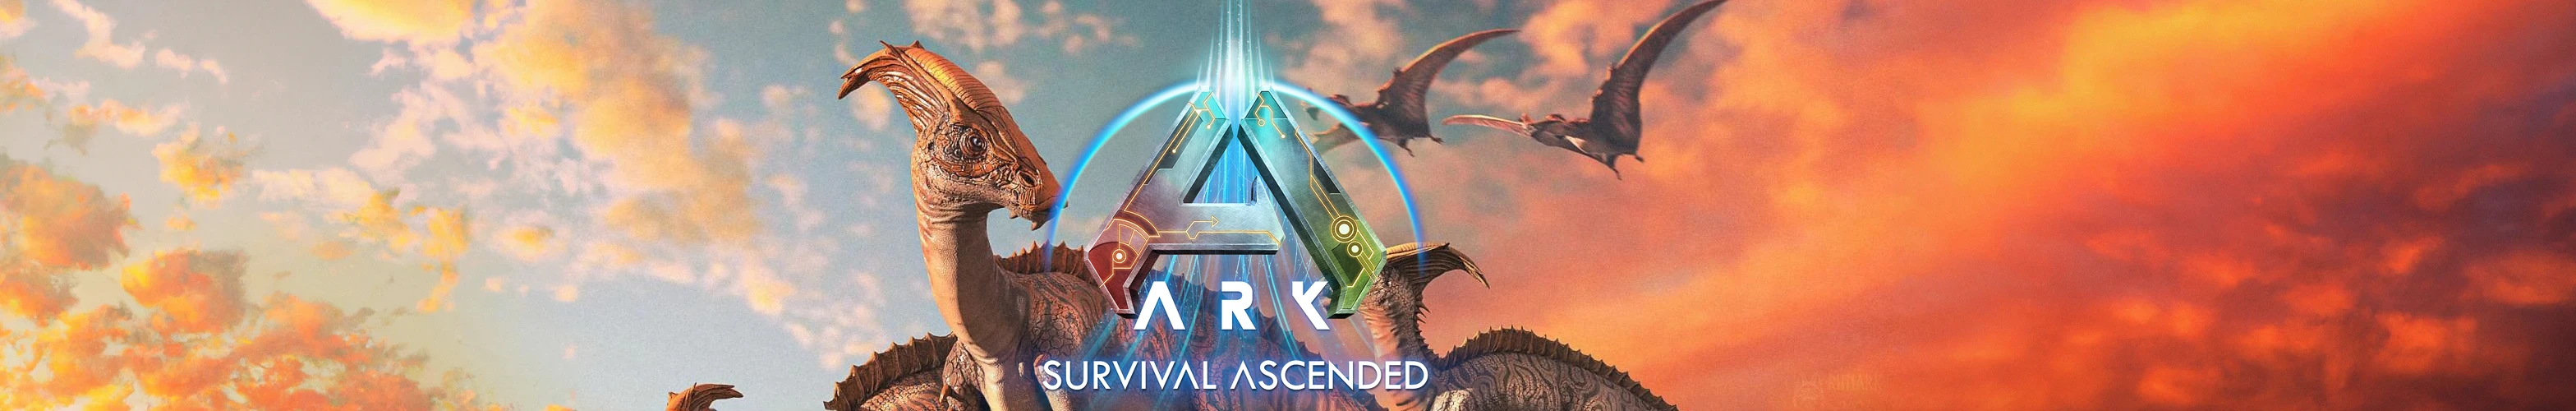 ARK: Survival Ascended Release Date Banner